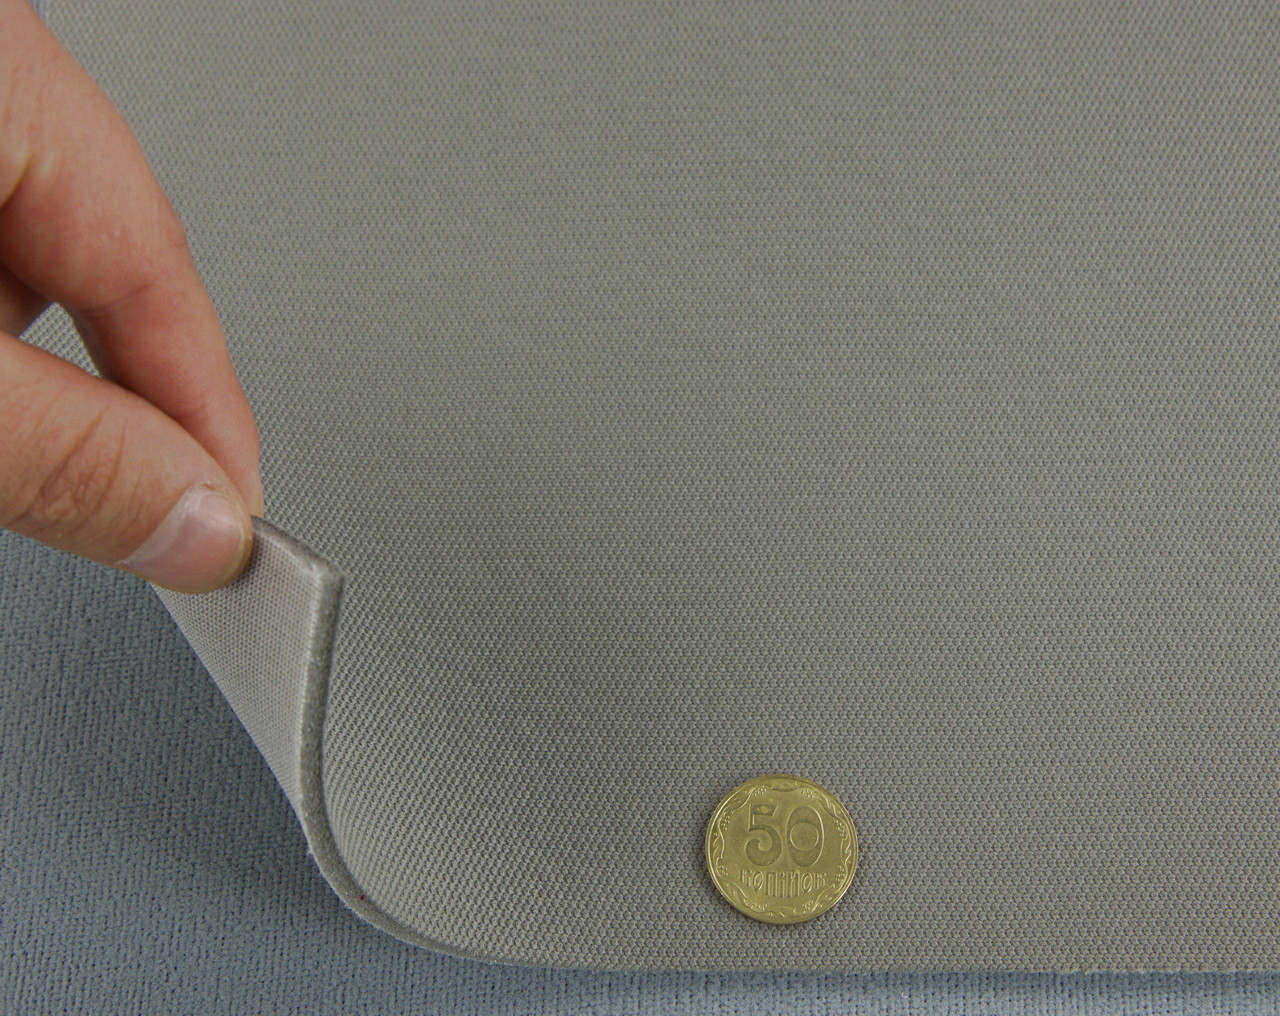 Автоткань потолочная ULTRA 68, (цвет графит) на поролоне, толщина 4мм, ширина 170см, Турция детальная фотка